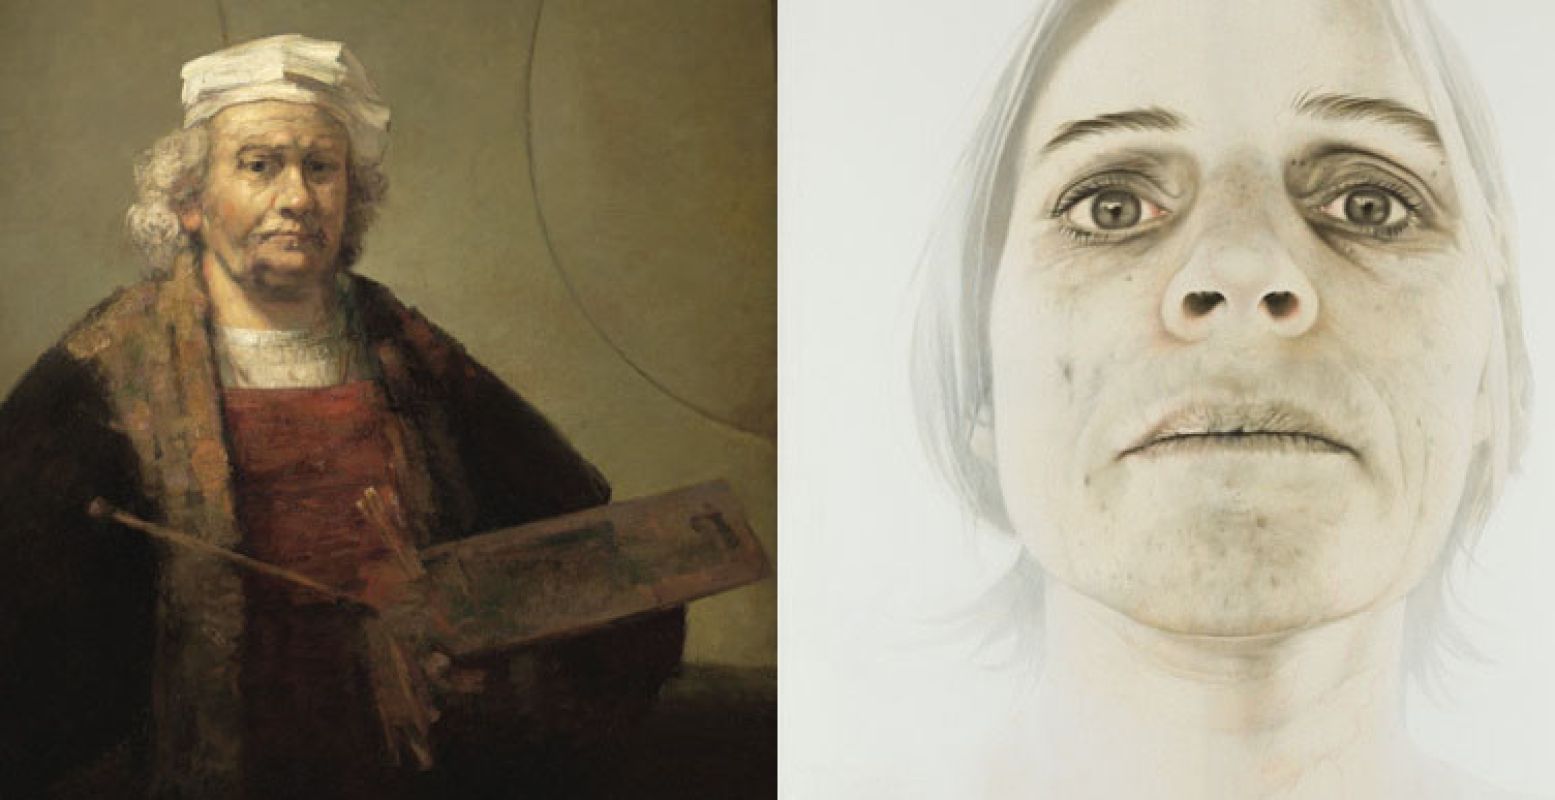 Links: Henk Helmantel - Geschilderde kopie van Rembrandts zelfportret uit 1665, 1993. Olieverf op doek. Rechts: Annemarie Busschers - Zelfportret, 2010.